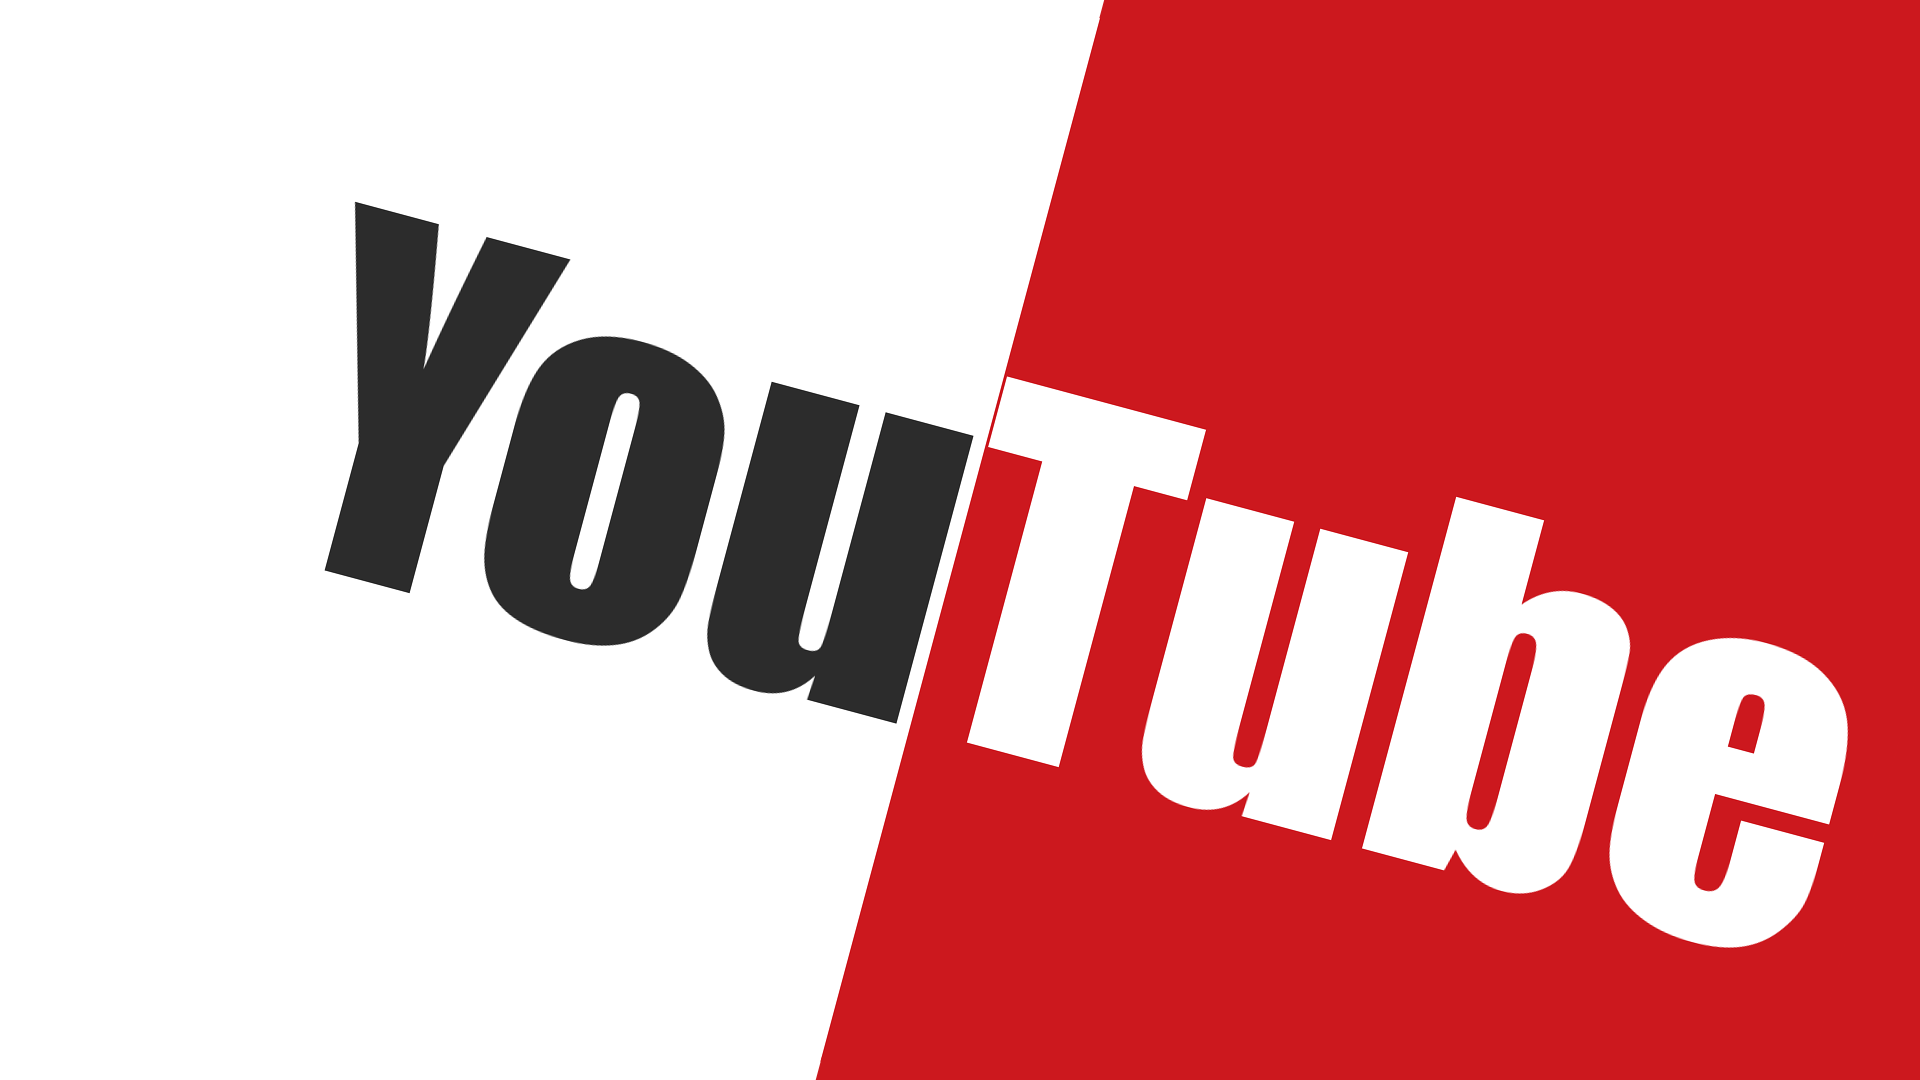 Youtube Logo Wallpaper